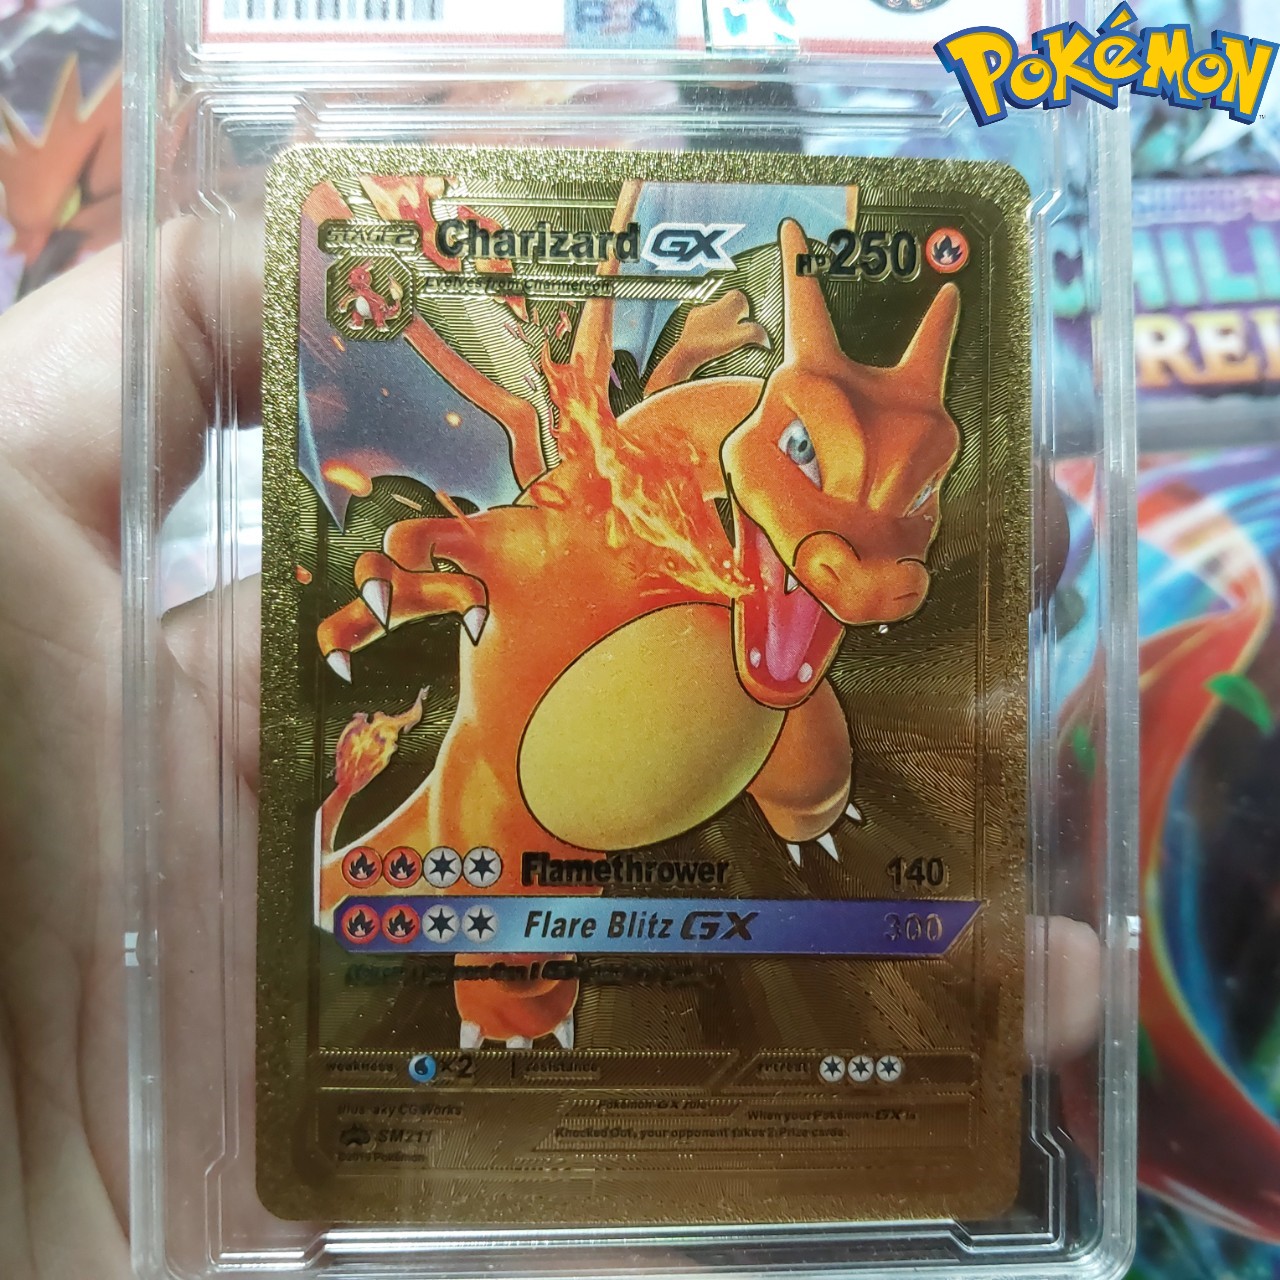 Charizard GX SM211 thẻ pokemon nhôm mạ vàng khủng long lửa bay phung hỏa Tặng kèm bảo vệ thẻ 1459 d24 1-36